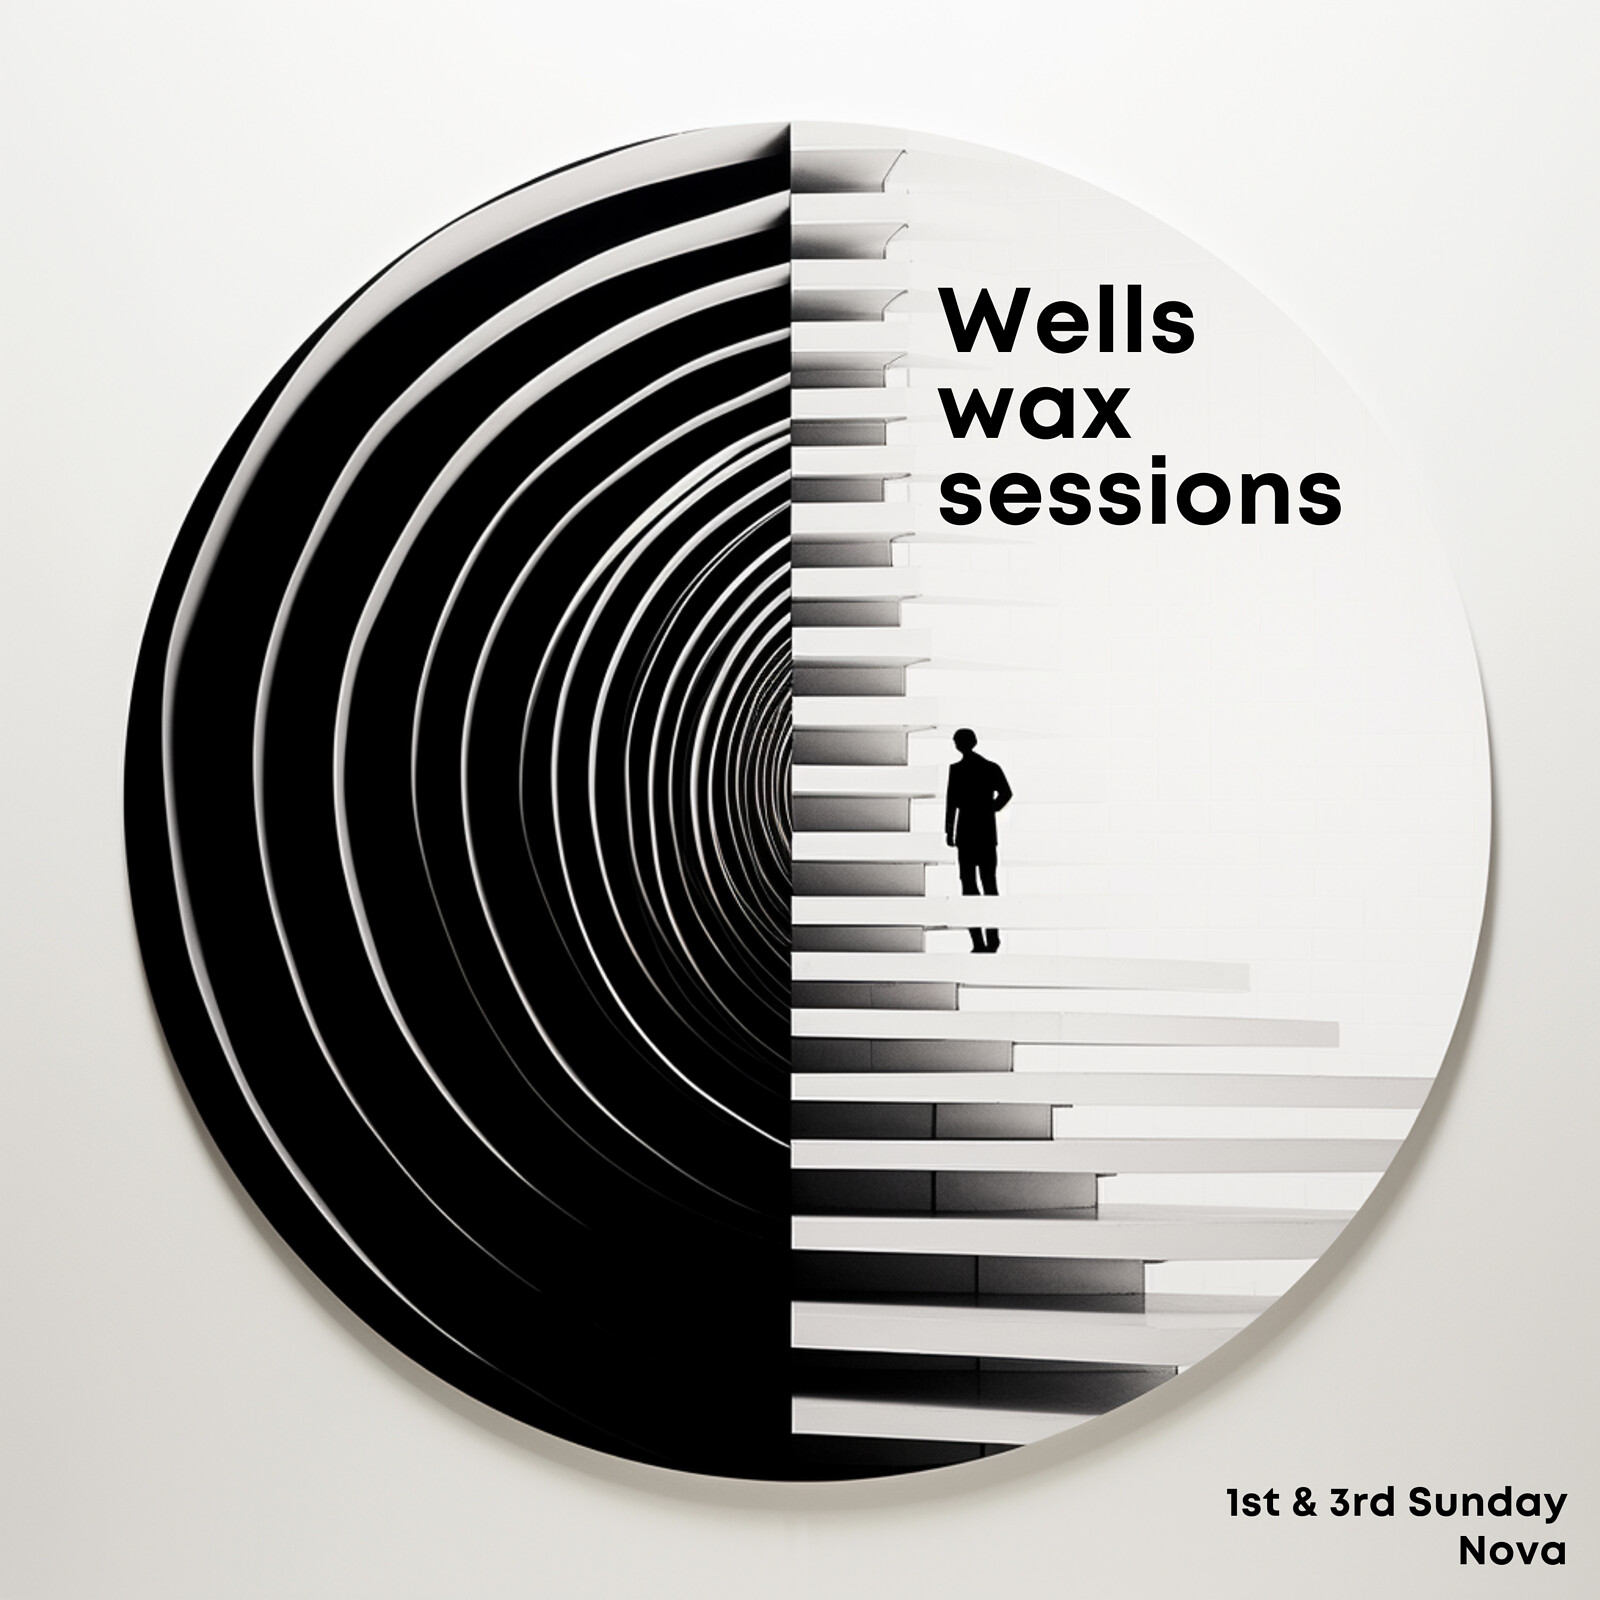 Wells Wax Sessions at Nova